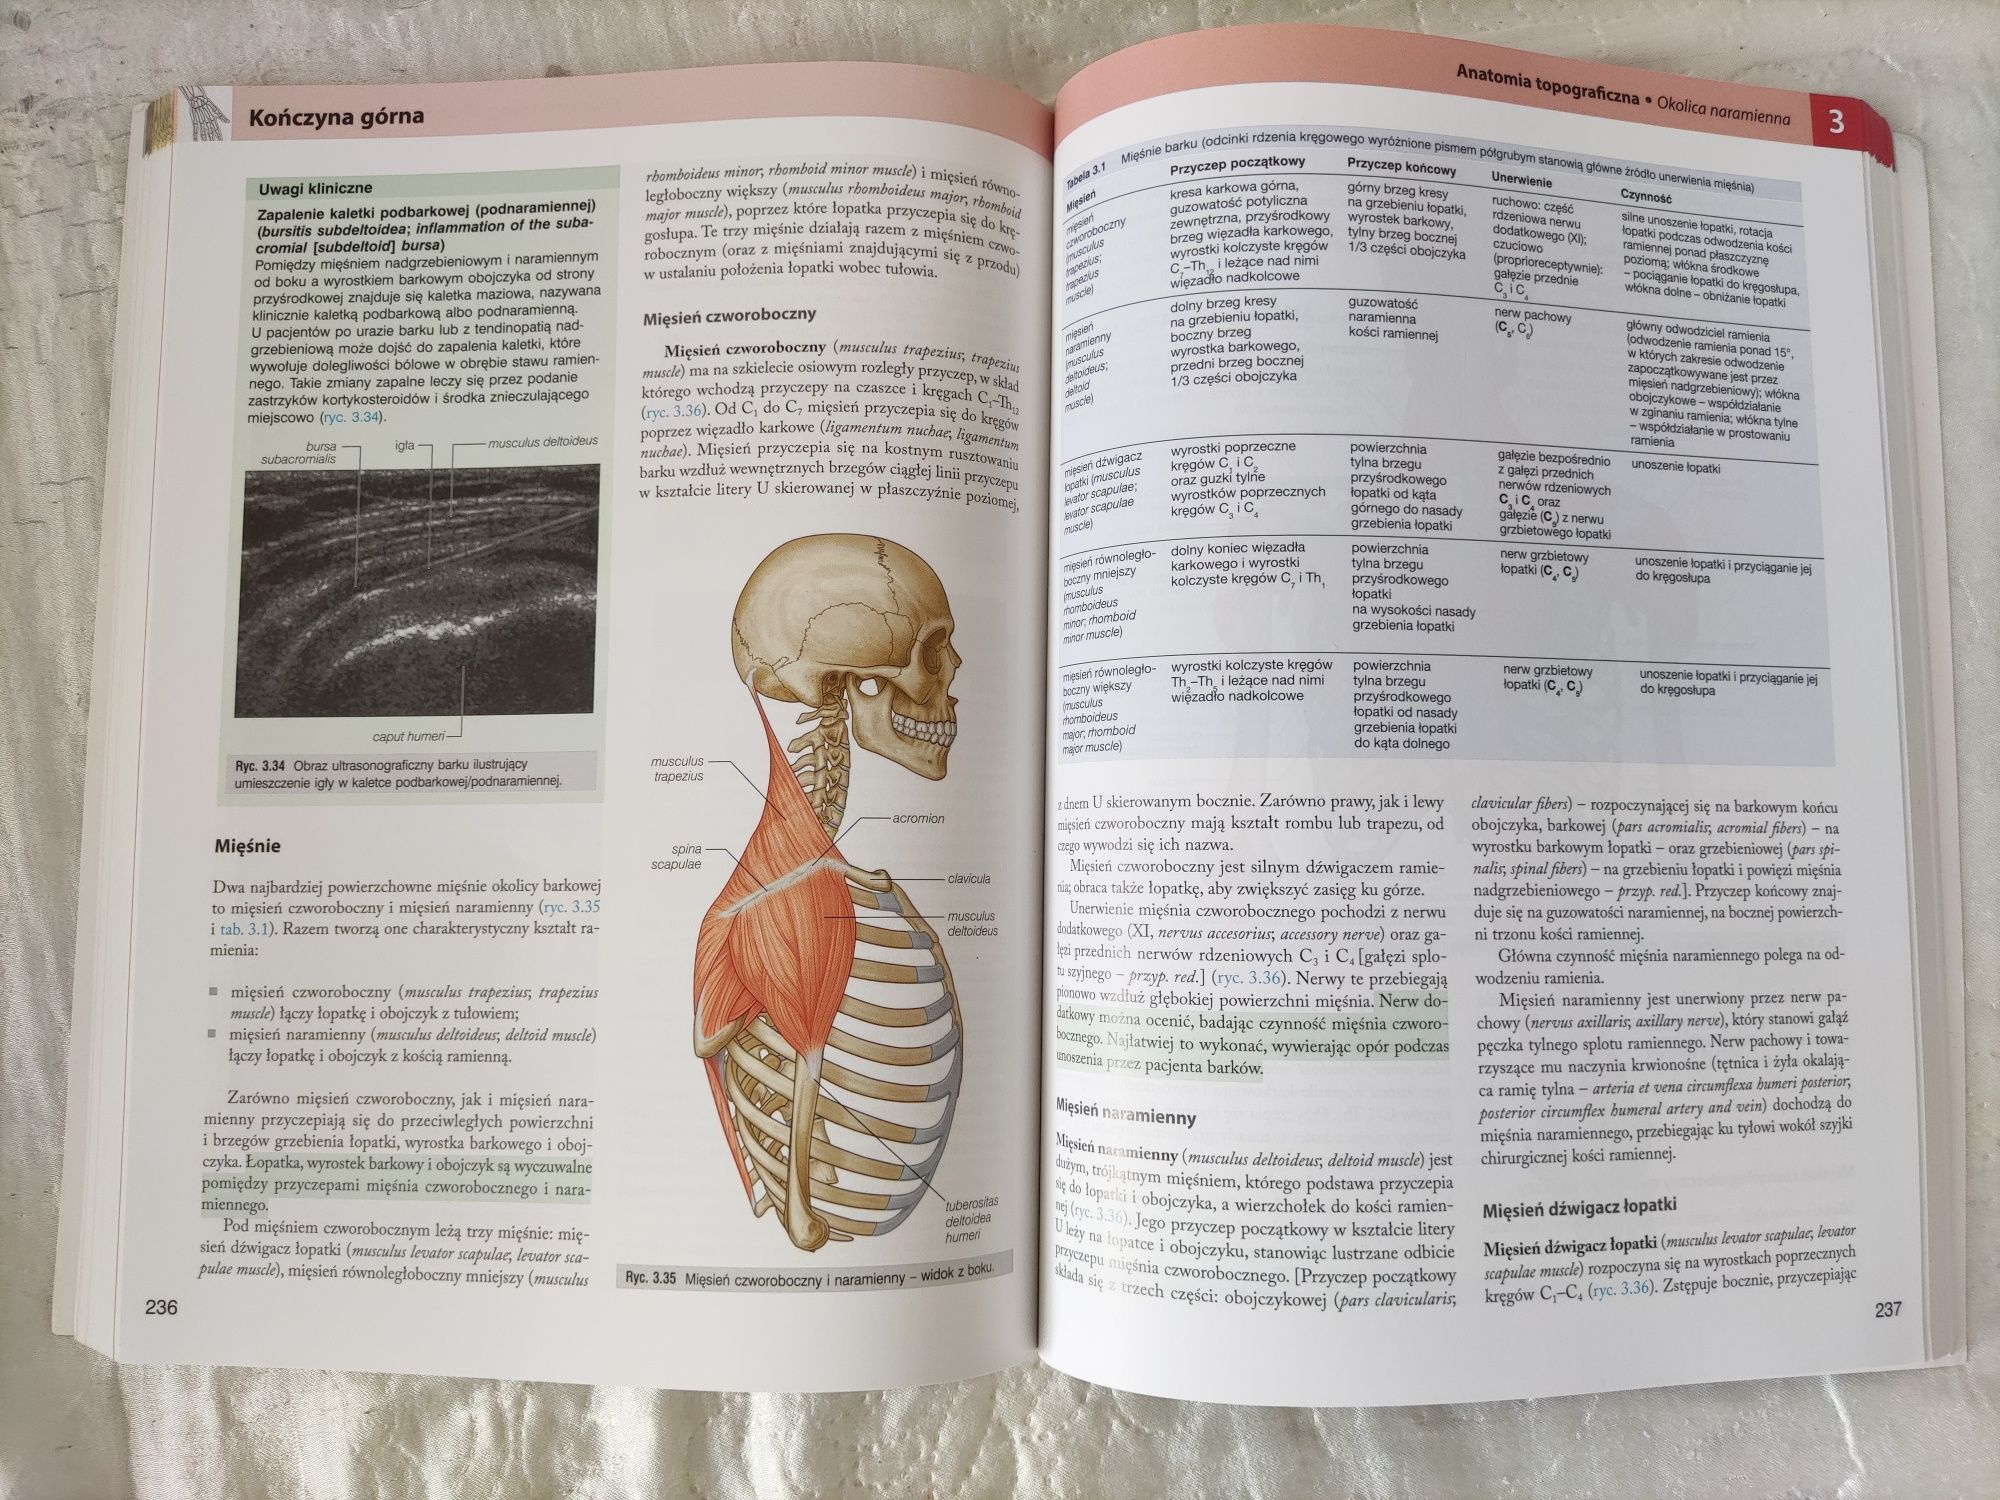 Anatomia Gray. Podręcznik dla studentów